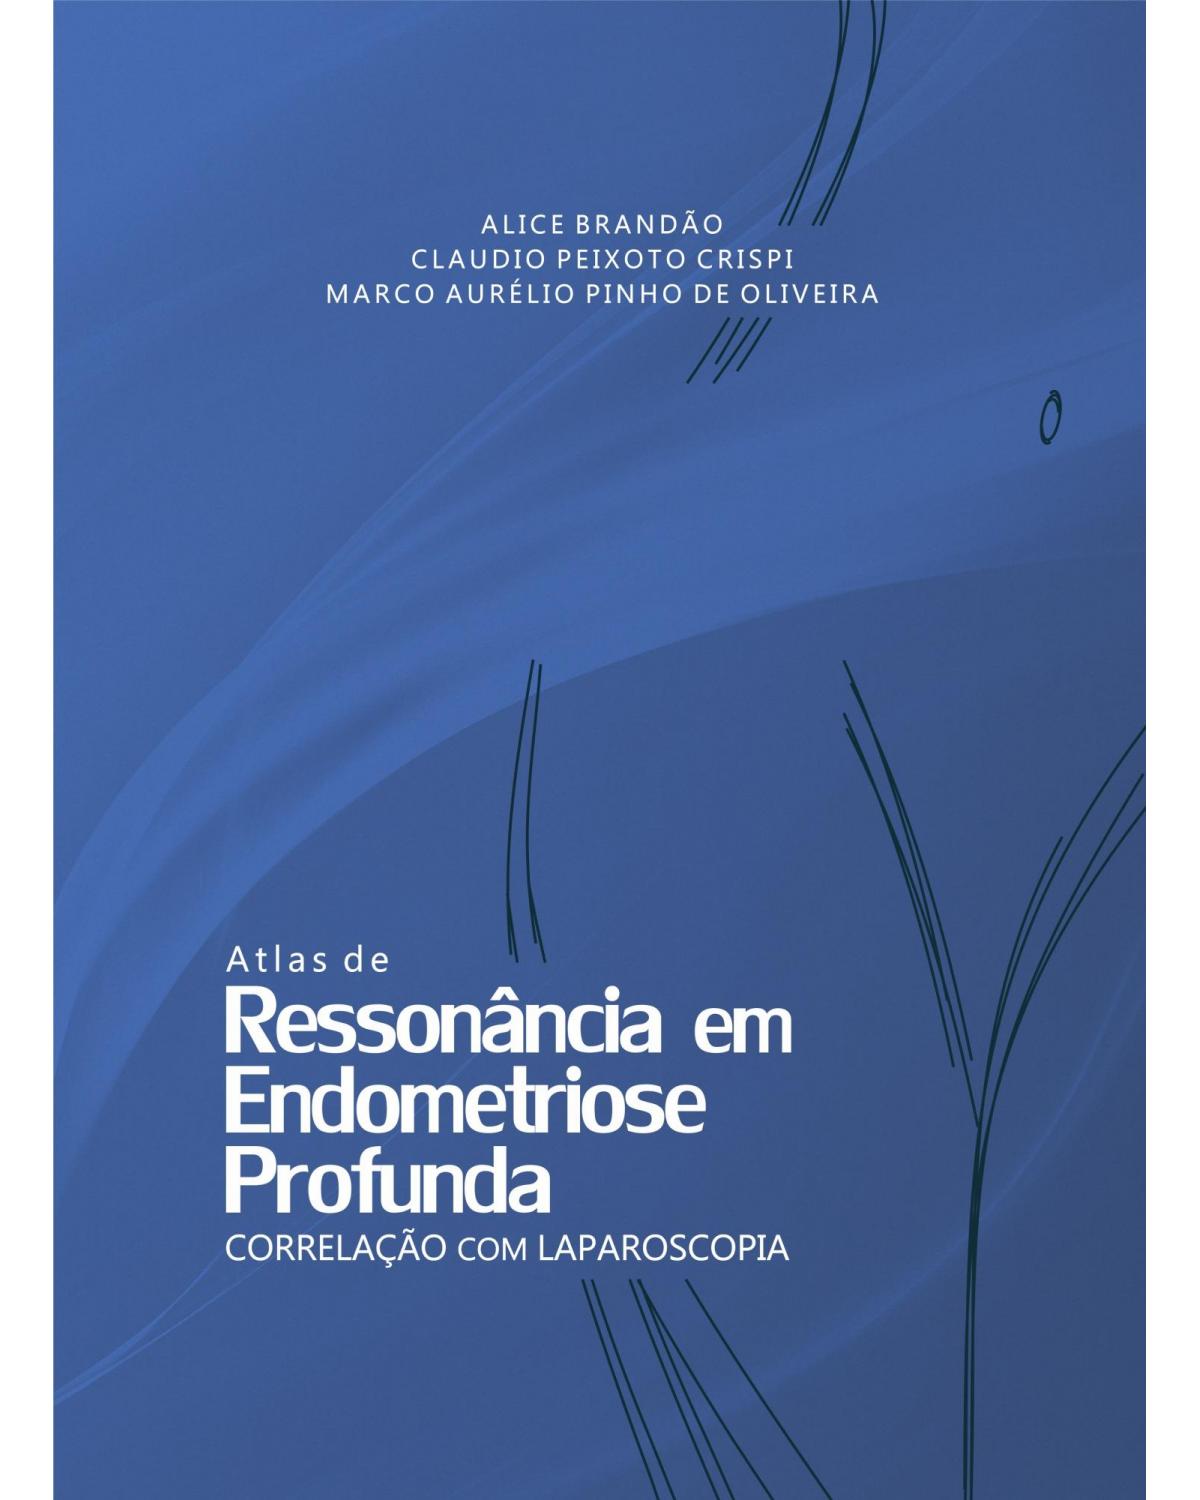 Atlas de ressonância em endometriose profunda - correlação com laparoscopia - 1ª Edição | 2014